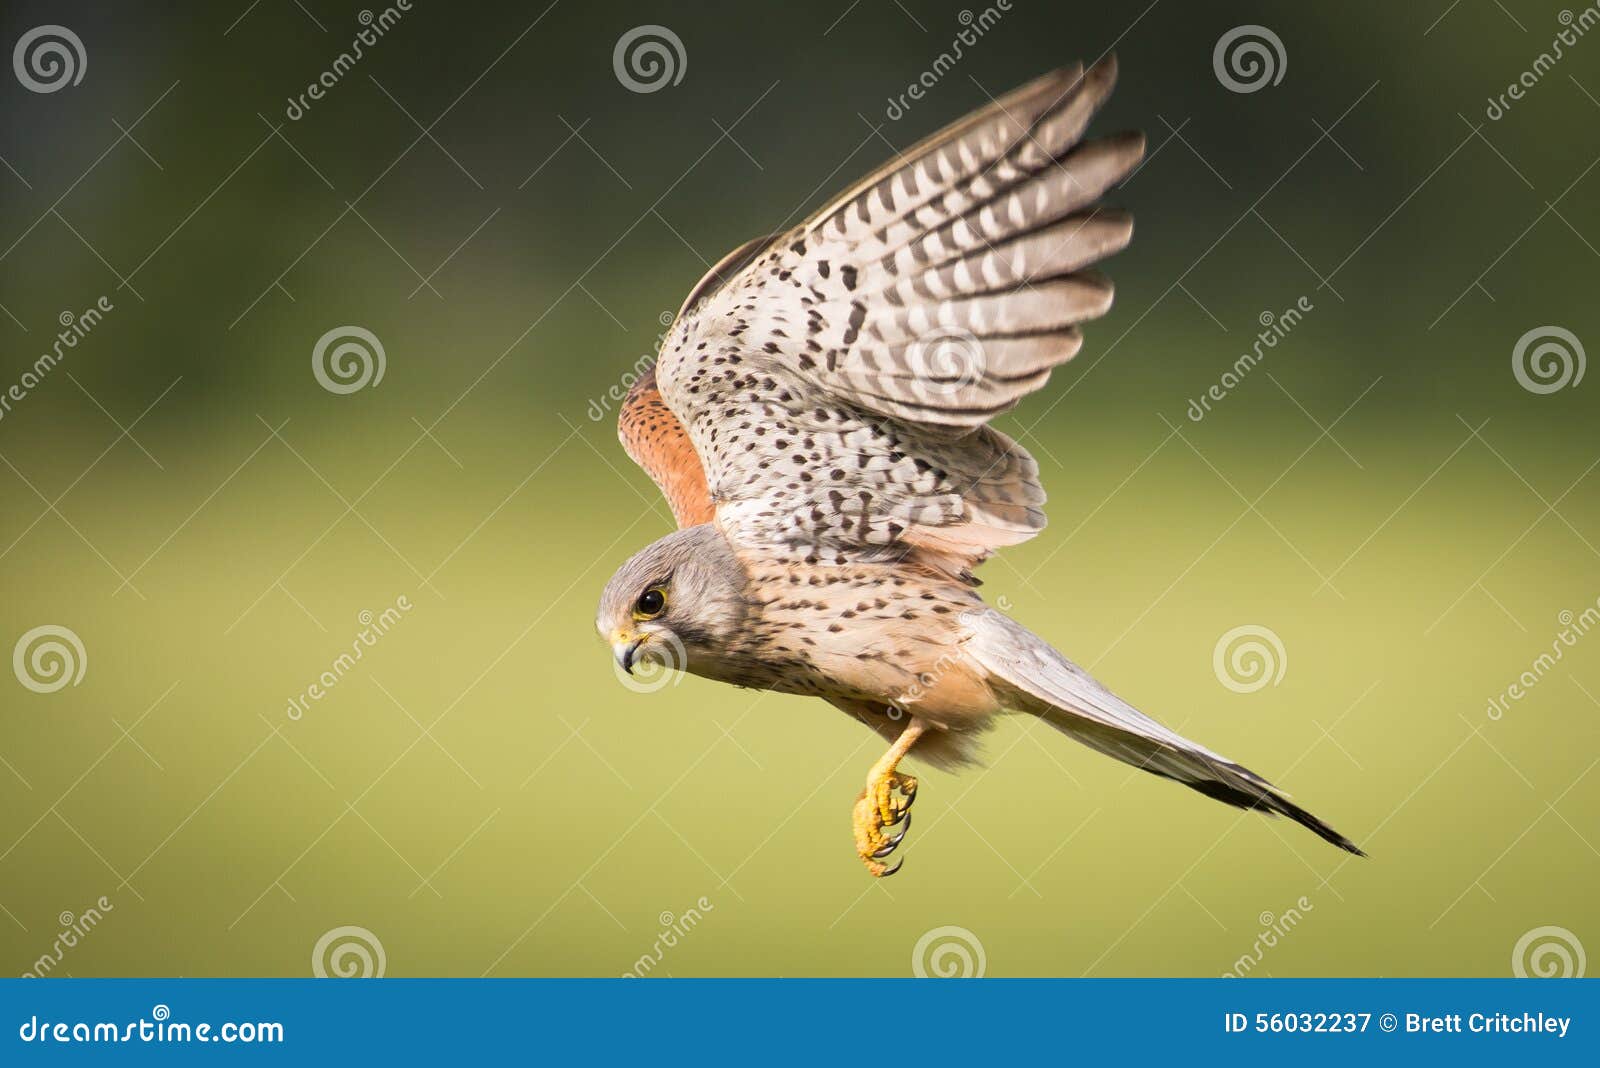 kestrel bird of prey in flight